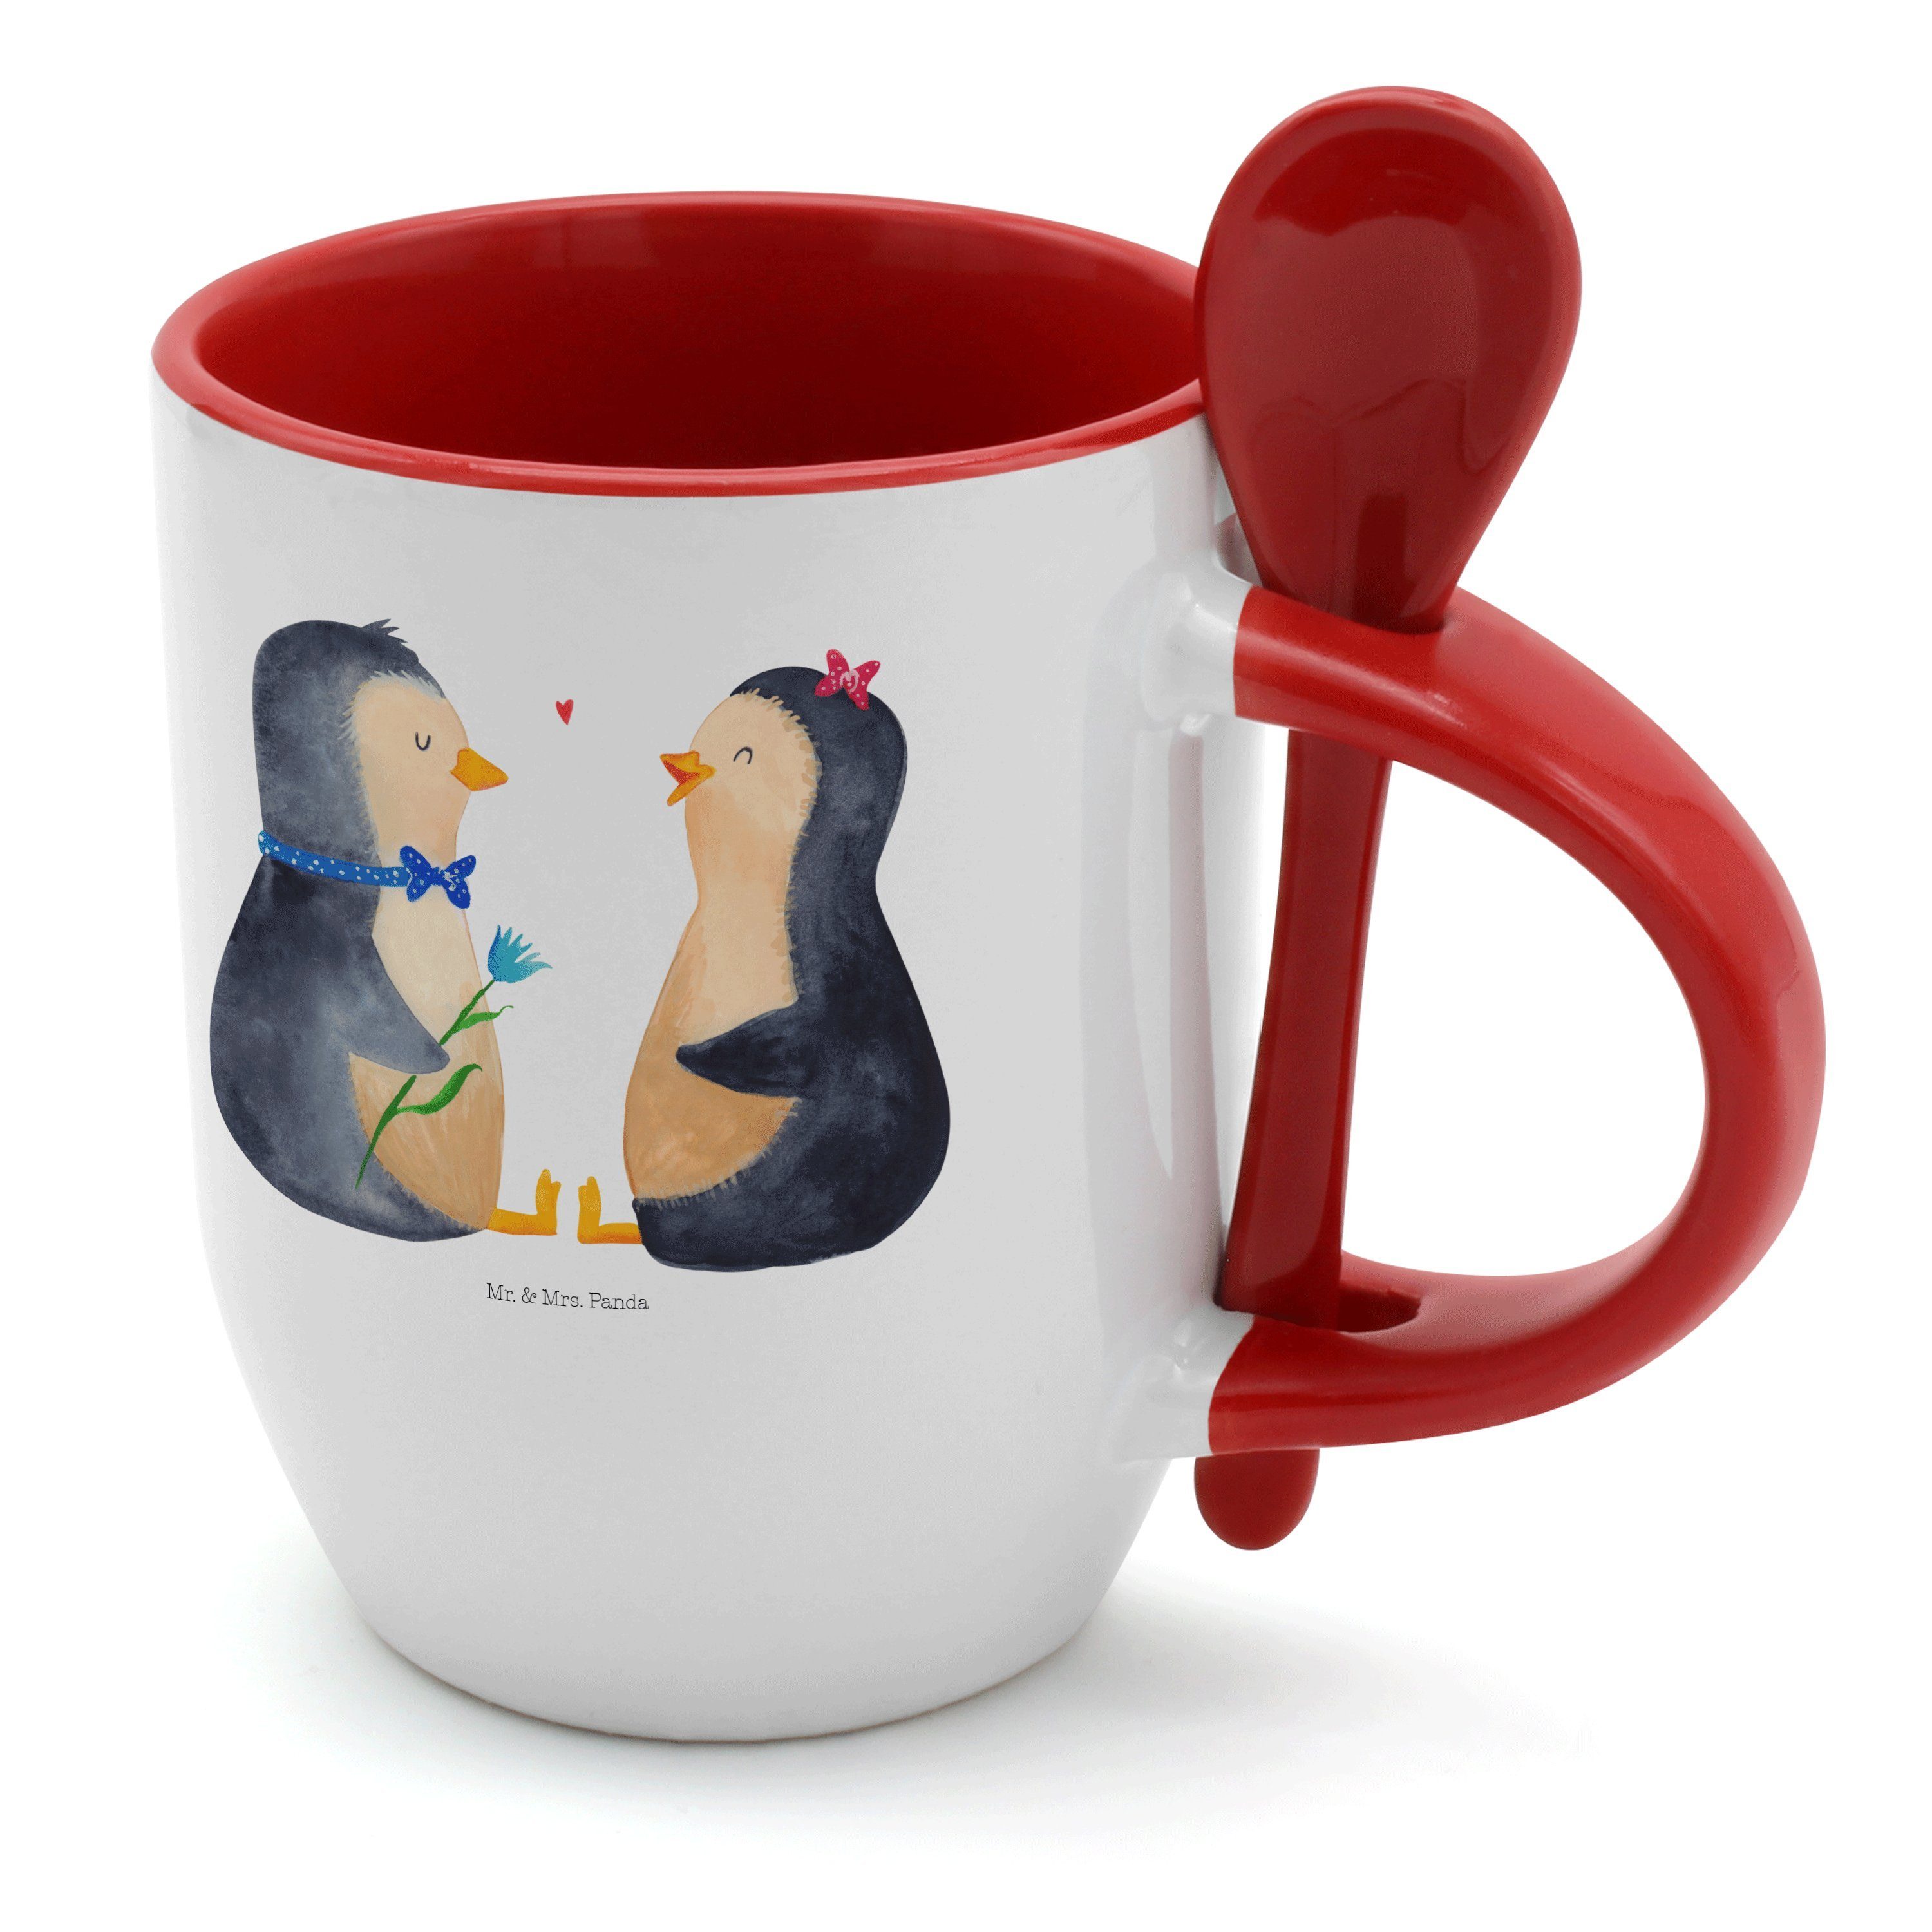 & Panda Mr. Hochzeitsgeschenk, Tasse Keramik Weiß Pärchen - Liebe, Geschenk, Kaffeeta, Mrs. - Pinguin